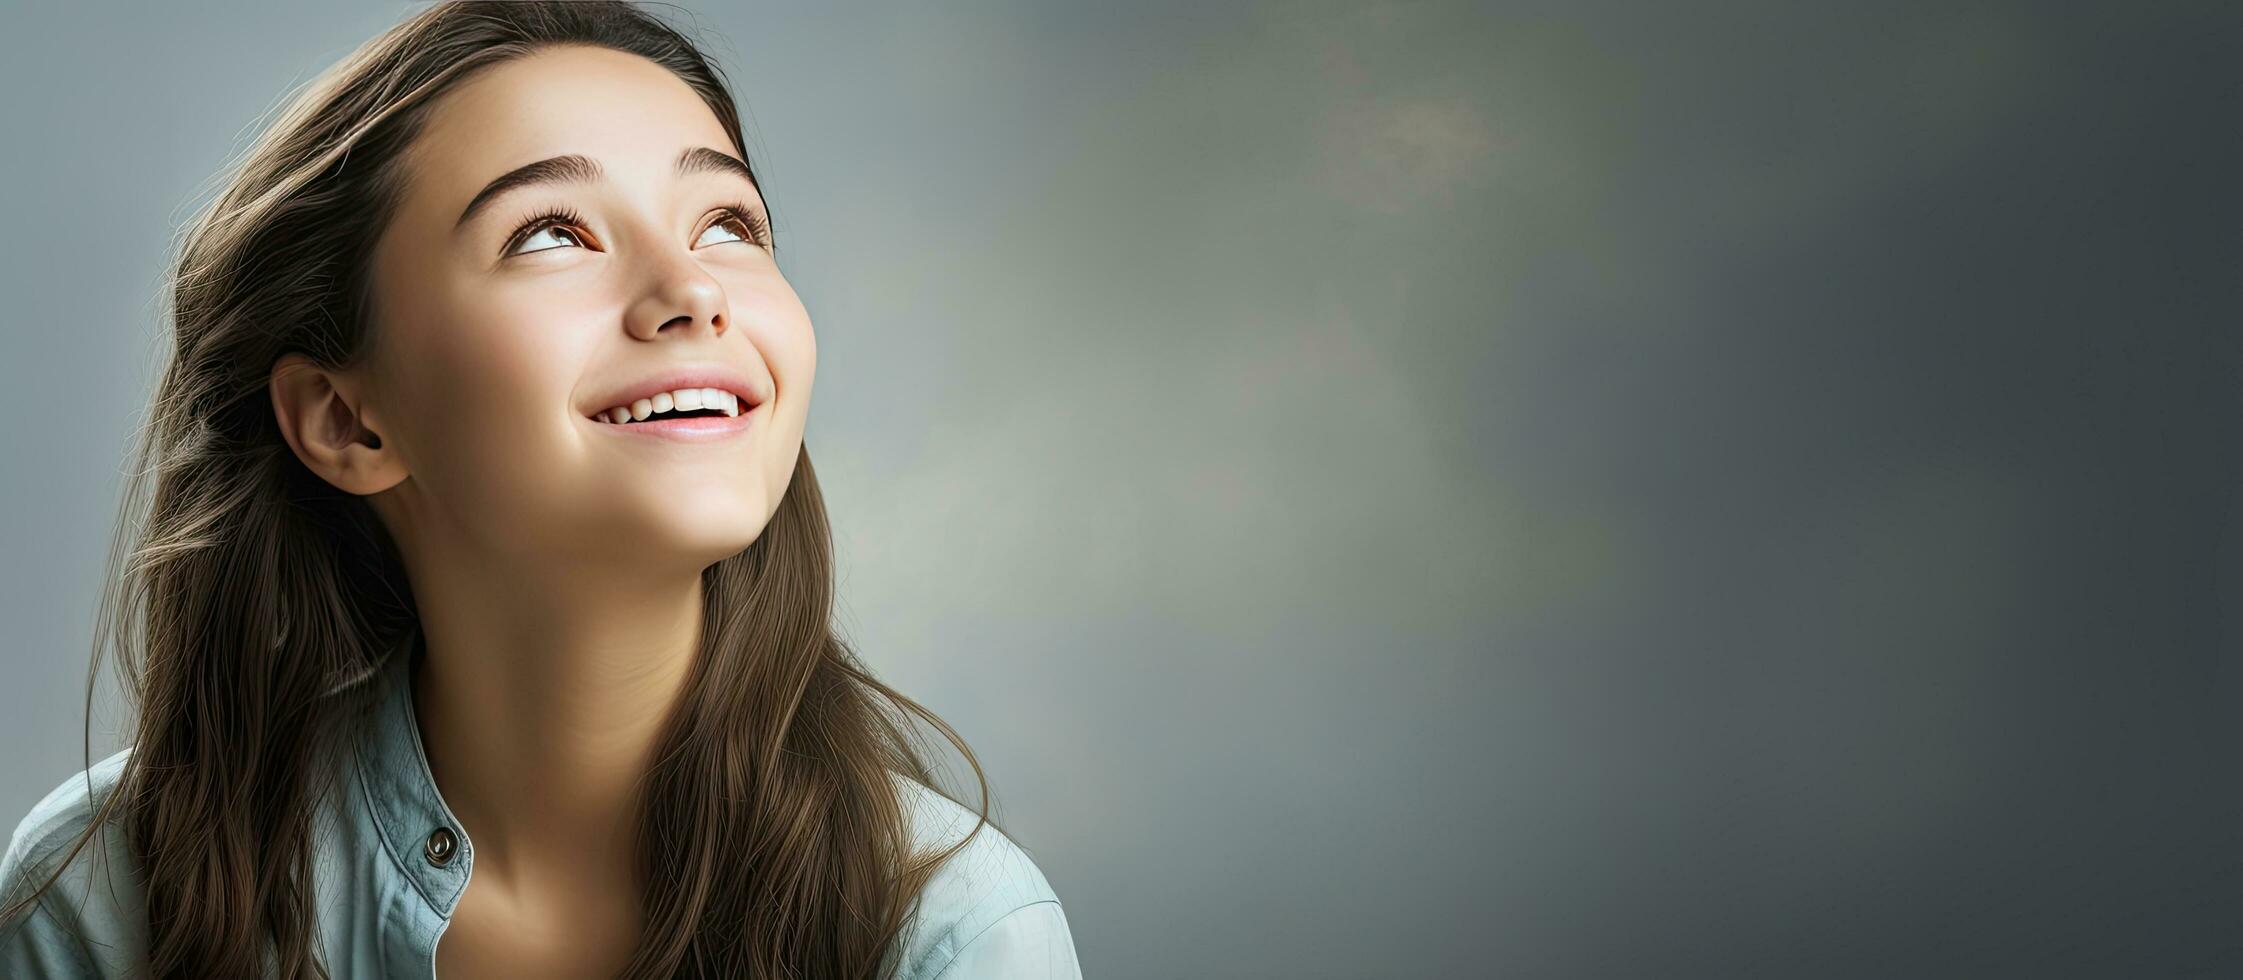 adolescente menina olhando acima com uma sorrir em branco cópia de espaço sobre luz fundo foto